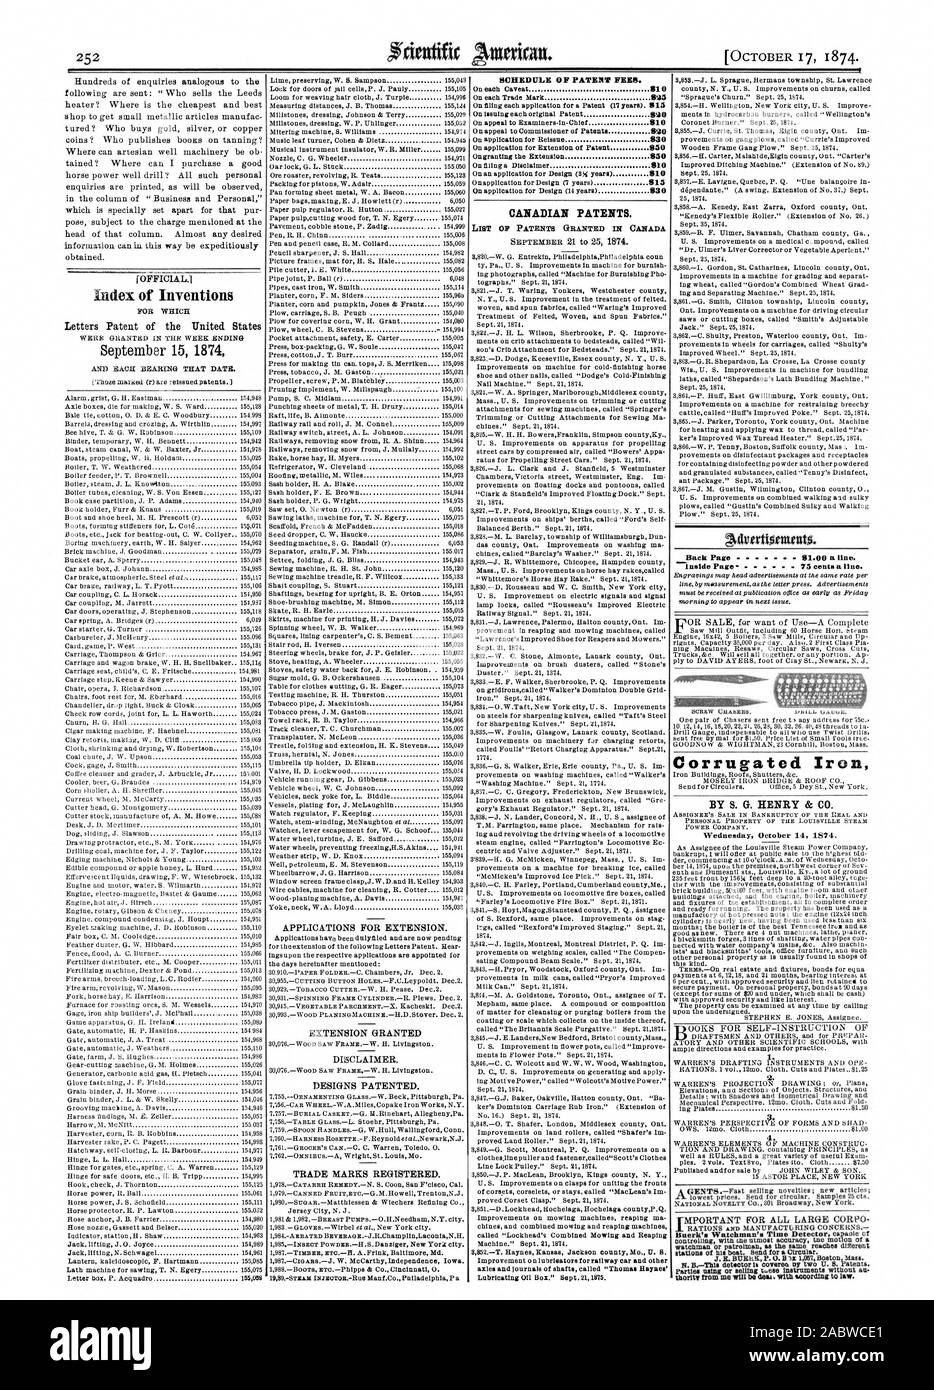 Índice de inventos el 15 de septiembre de 1874, el calendario de las tasas de patentes. Las patentes canadienses. ejes y muñones de árboles denominados "Thomas Haynes''. Cuadro de Aceite Lubricante Sept.211875. Volver a la página anterior 81.00 una línea. Hierro Corrugado por S. G. HENRY & Co. el miércoles 14 de octubre de 1874. 4. hnim, Scientific American, 1874-10-17 Foto de stock